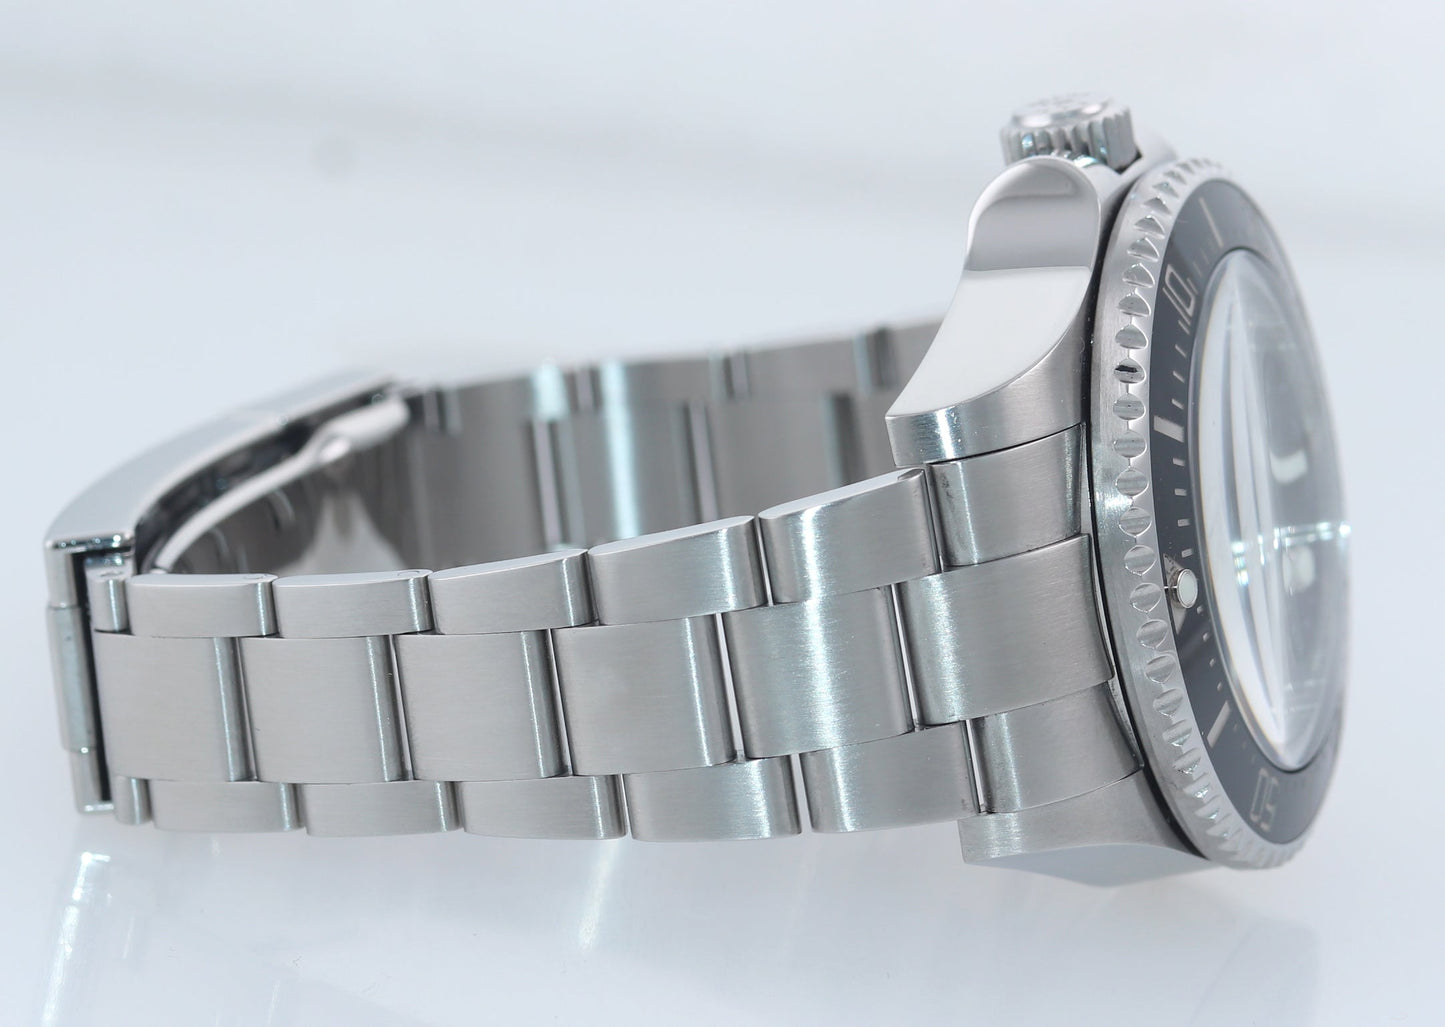 MINT 2013 PAPERS Rolex Sea-Dweller DEEPSEA 116660 Steel 44mm Black Ceramic Watch